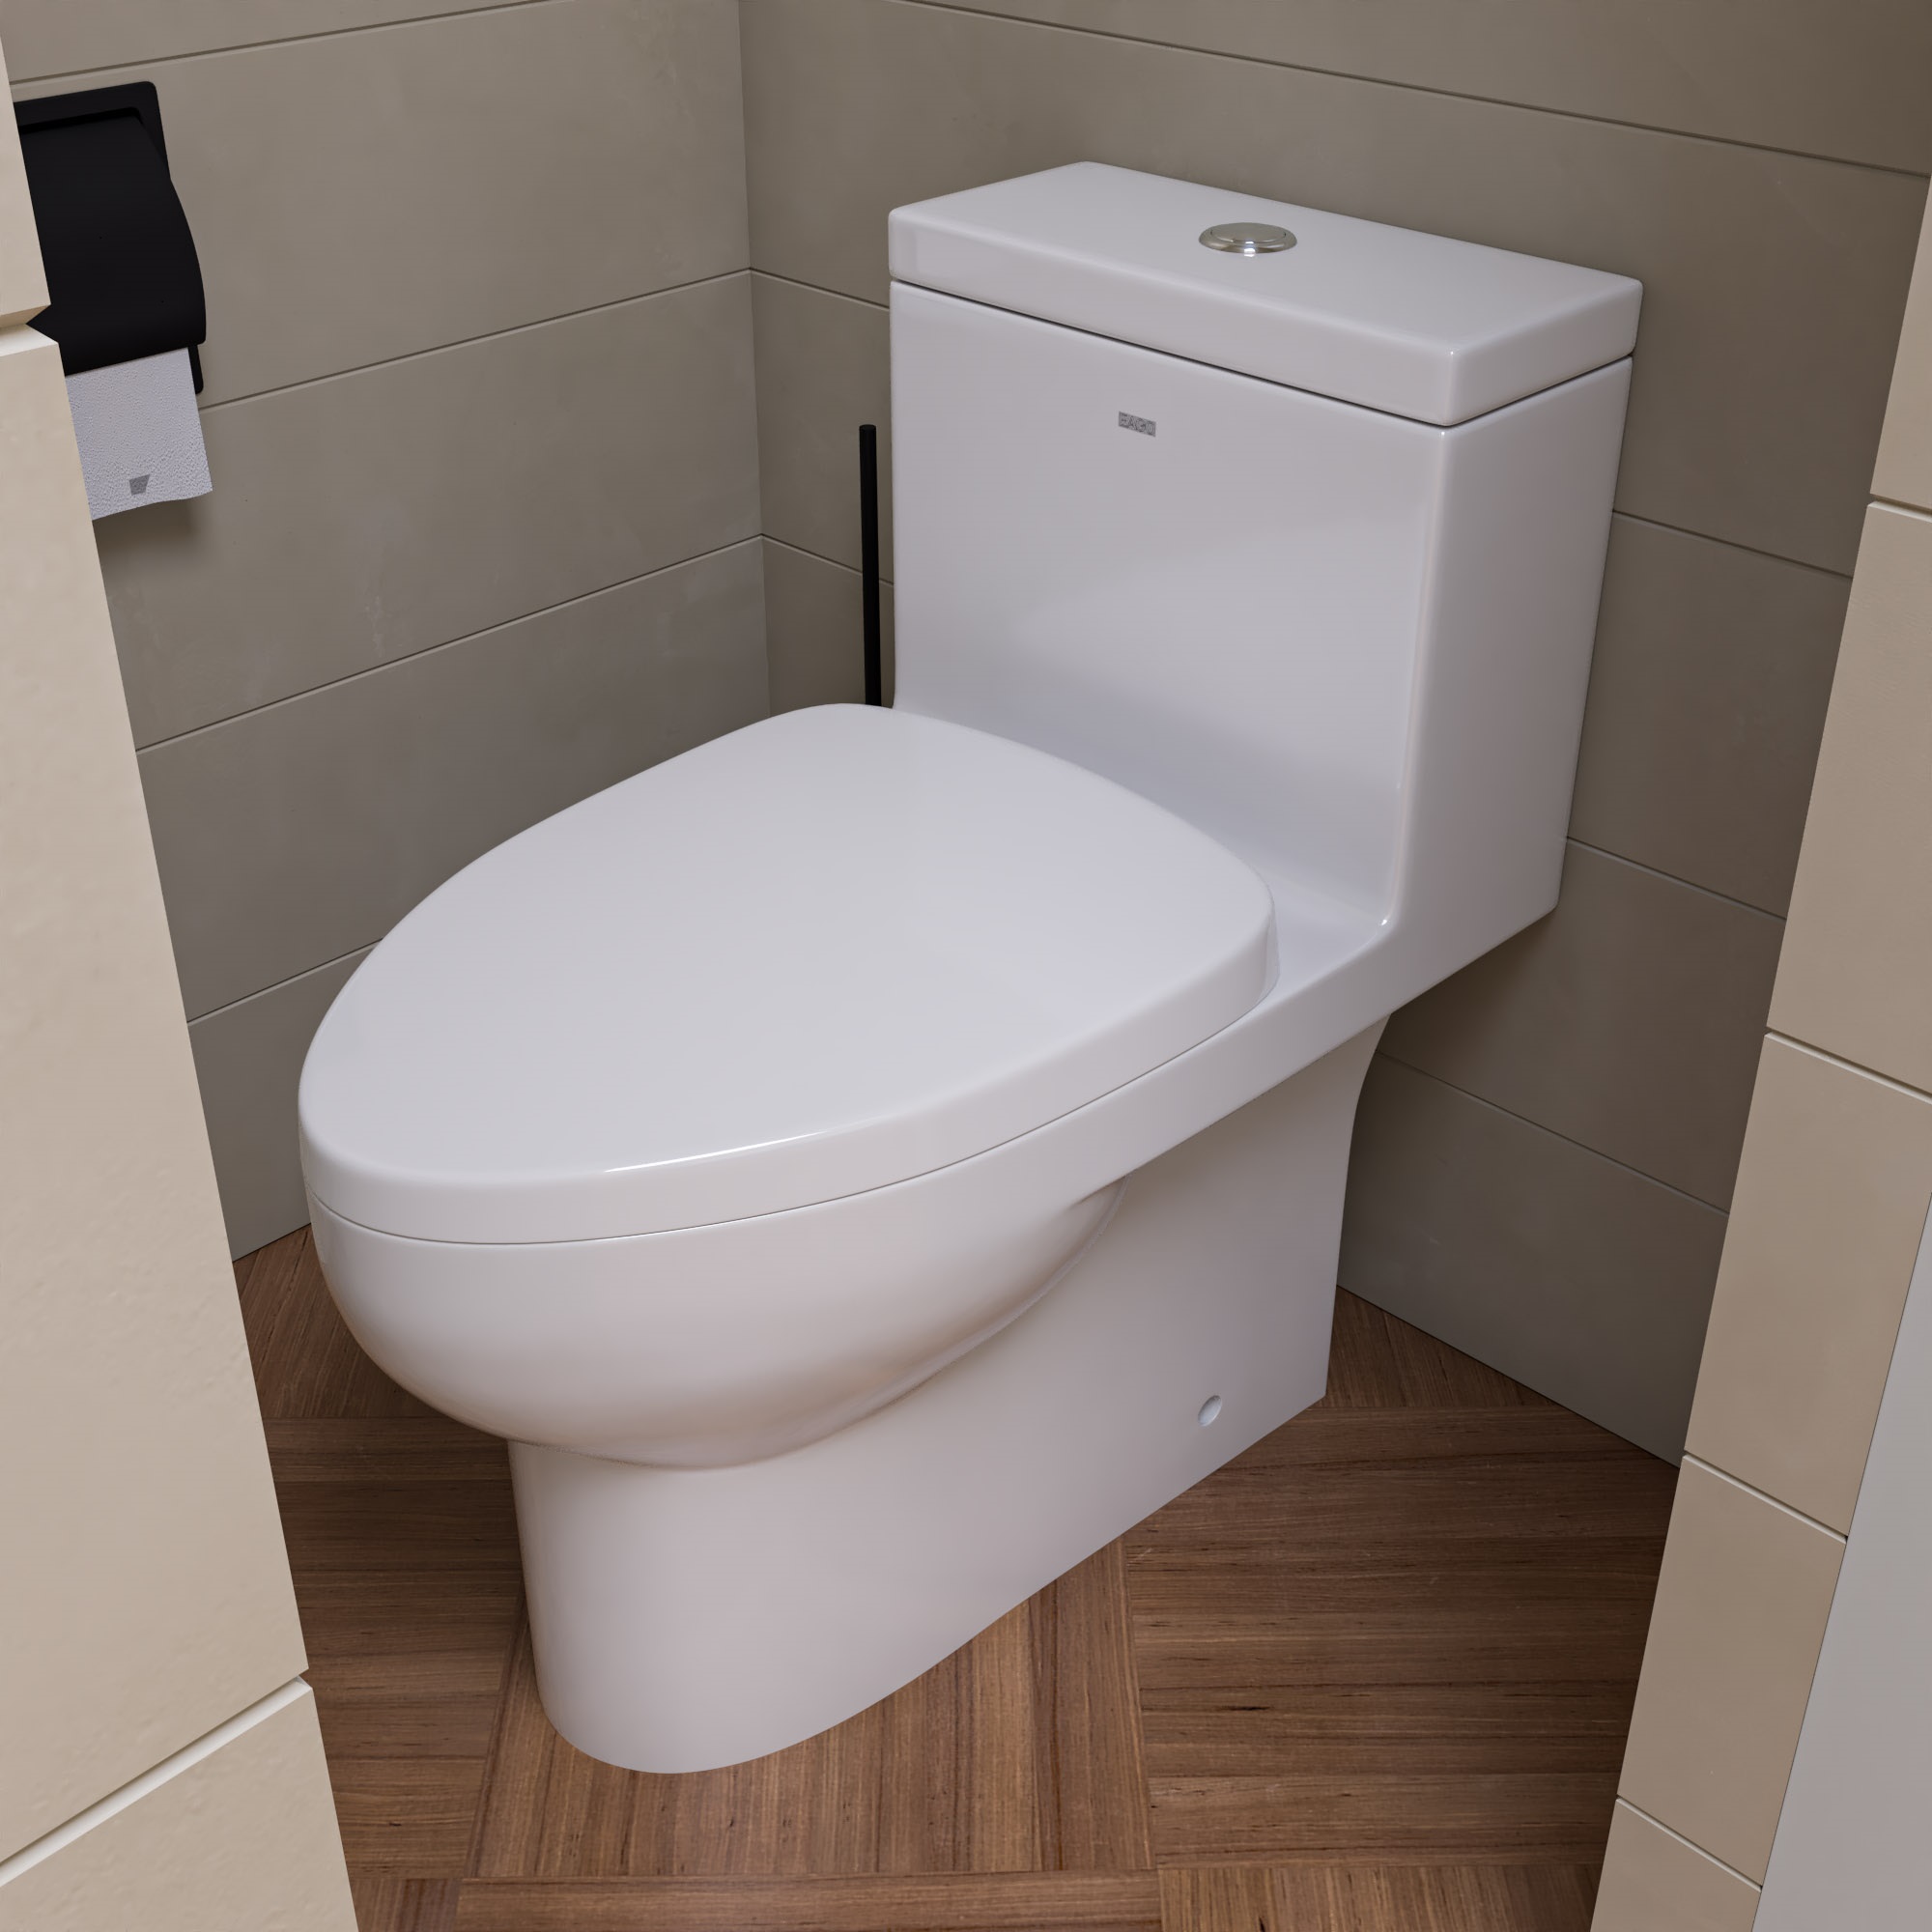 Tb359 Dual Flush One Piece Eco-friendly Ceramic Toilet - White